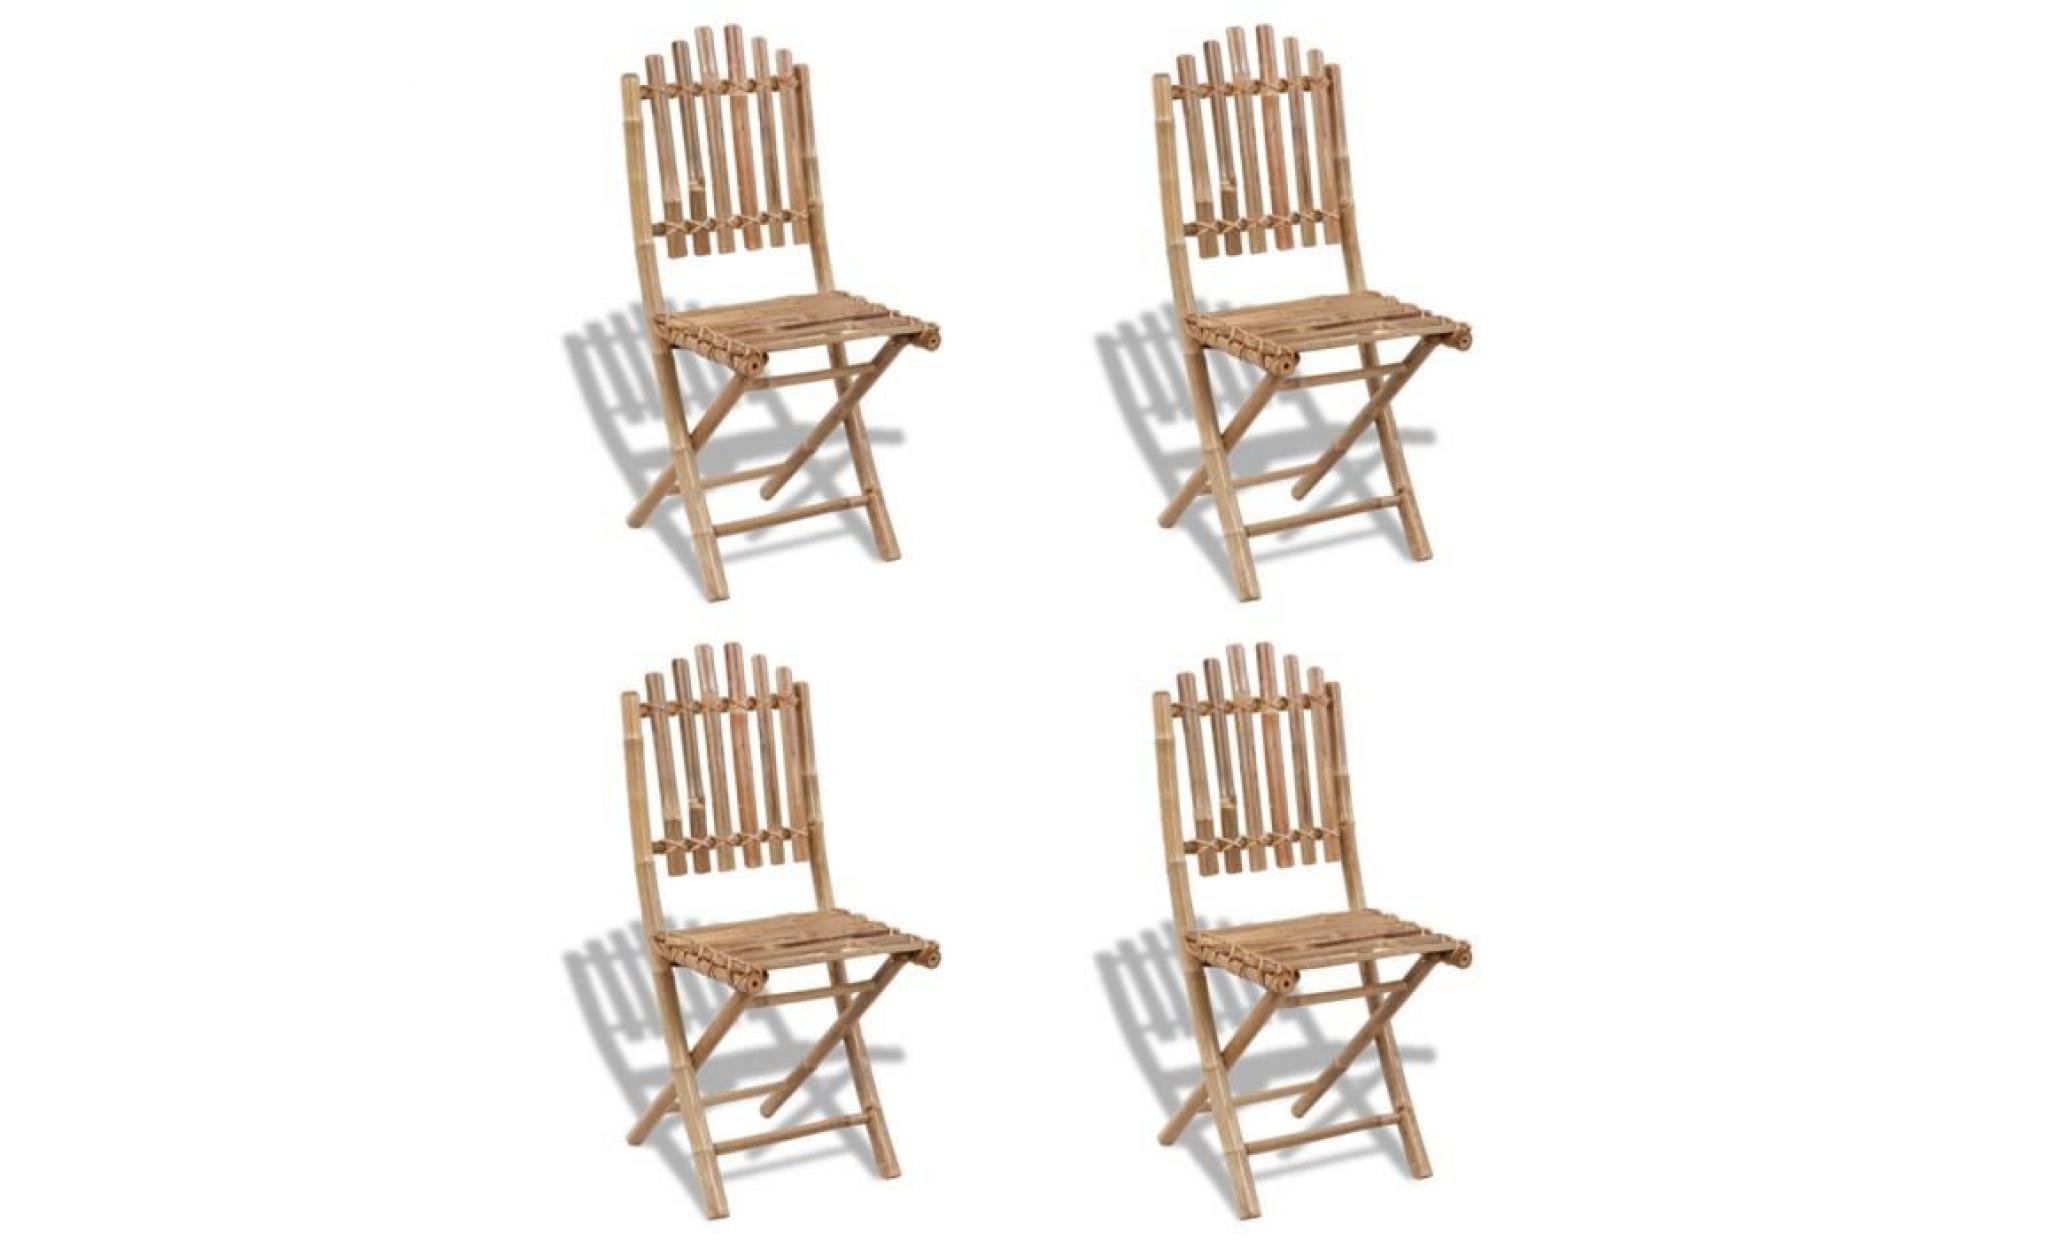 cet ensemble de 4 chaises sera un excellent choix pour les repas en plein air dans le jardin ou le patio. en bambou massif, ces c... pas cher